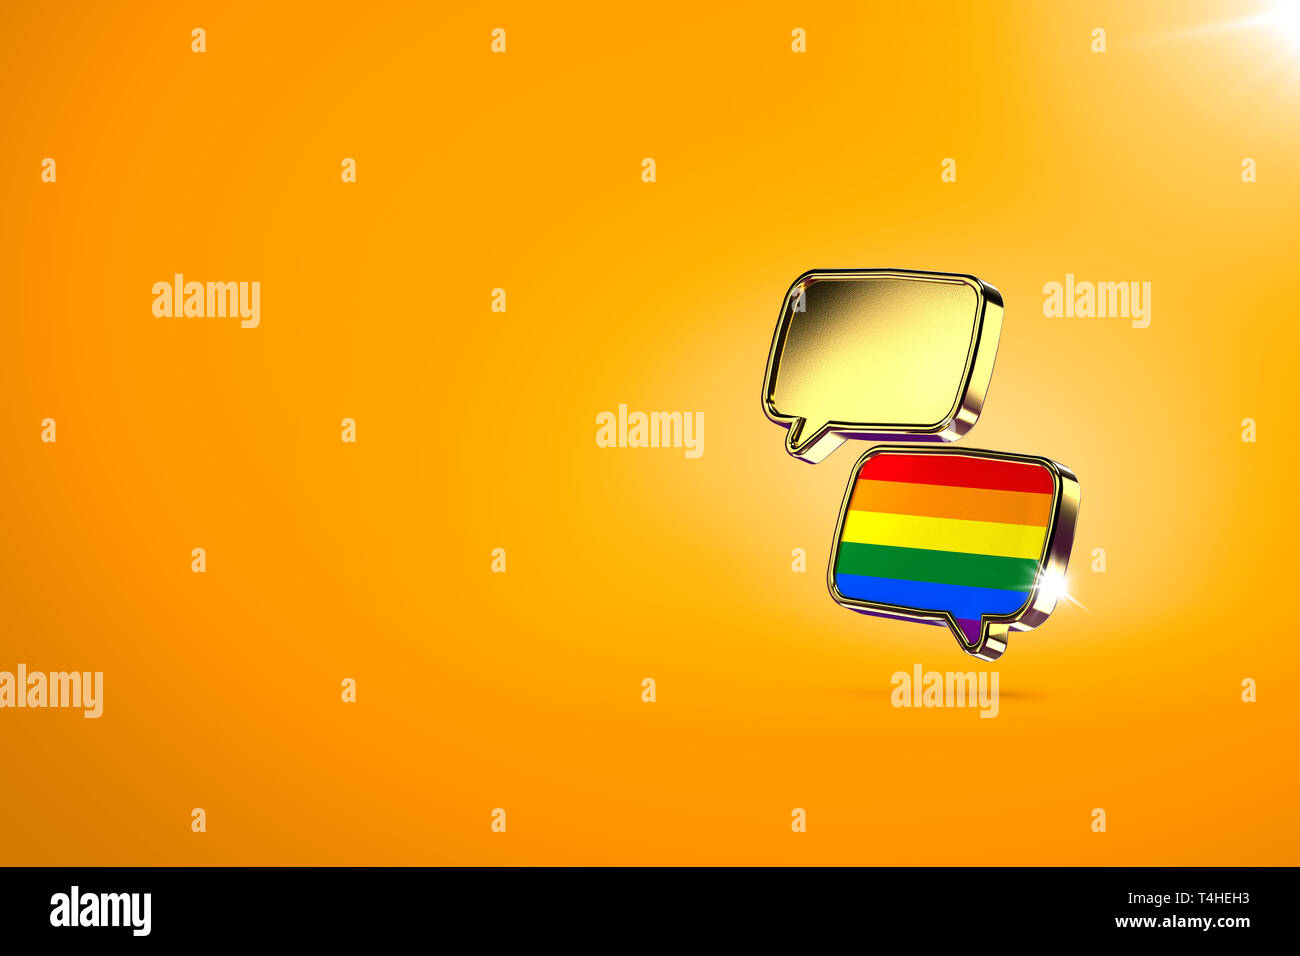 Zwei chat Wolken - eines mit Regenbogenfarben im Inneren. Dialog zwischen homosexuellen und heterosexuellen Menschen, Vereinbarungen und Frieden Konzept. Orange bac Stockfoto